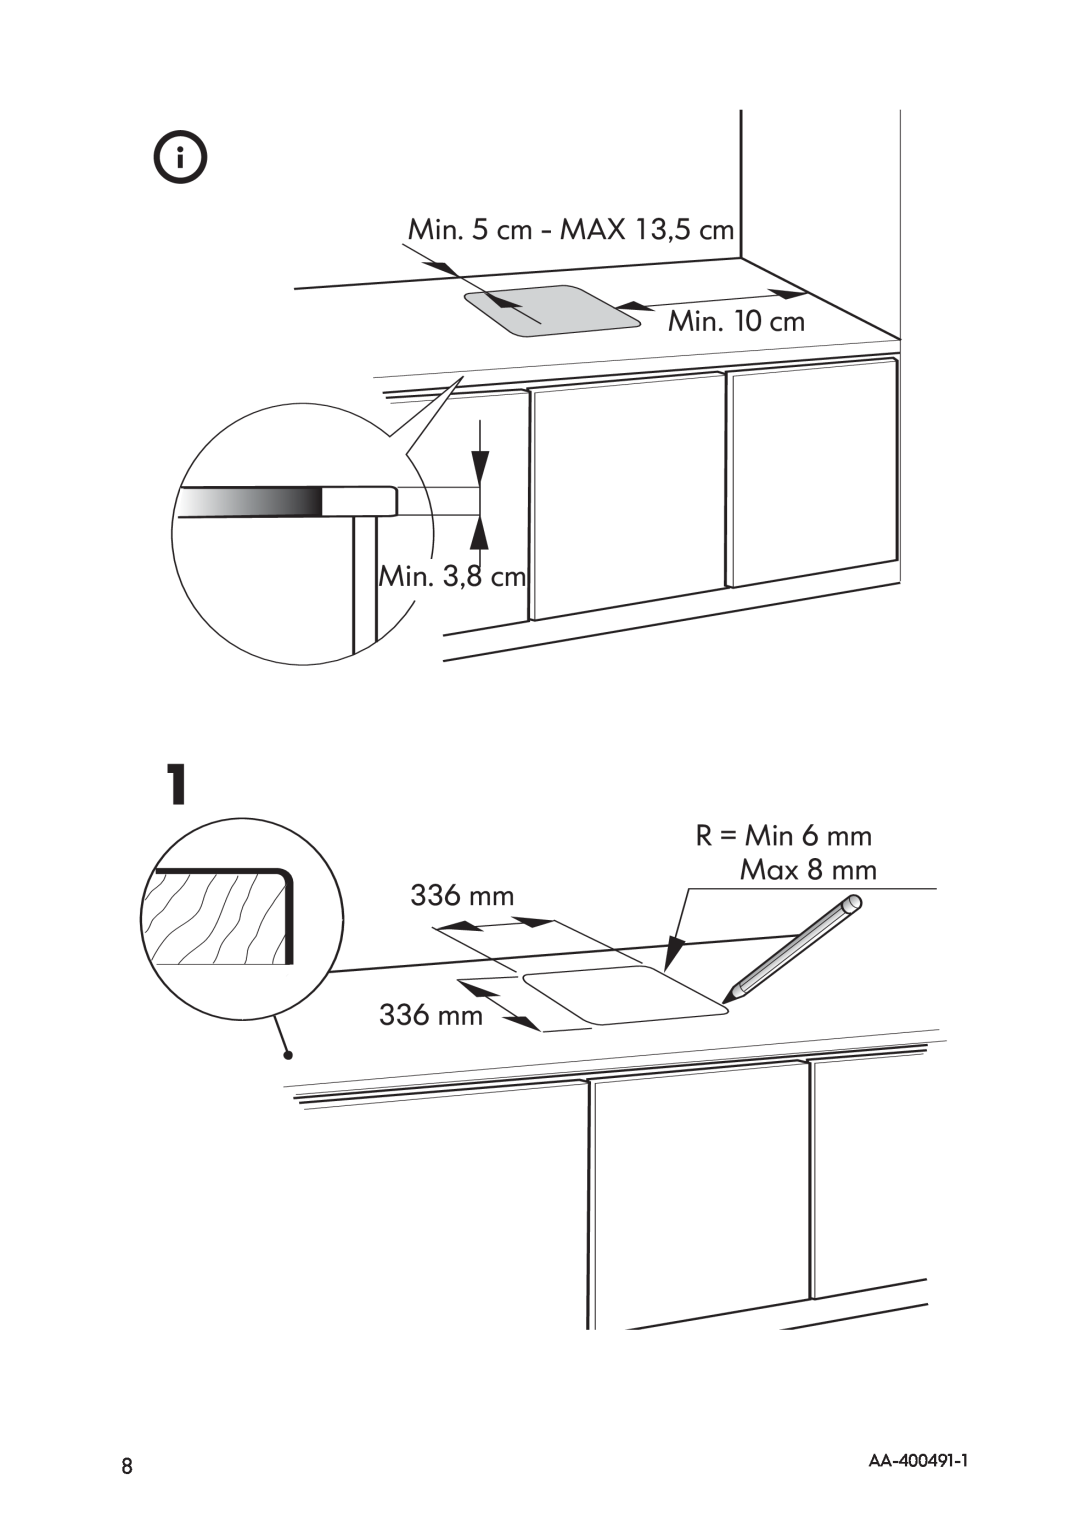 IKEA HIN1T manual Min. 5 cm - MAX 13,5 cm Min. 10 cm Min. 3,8 cm, R = Min 6 mm Max 8 mm 336 mm 336 mm, AA-400491-1 